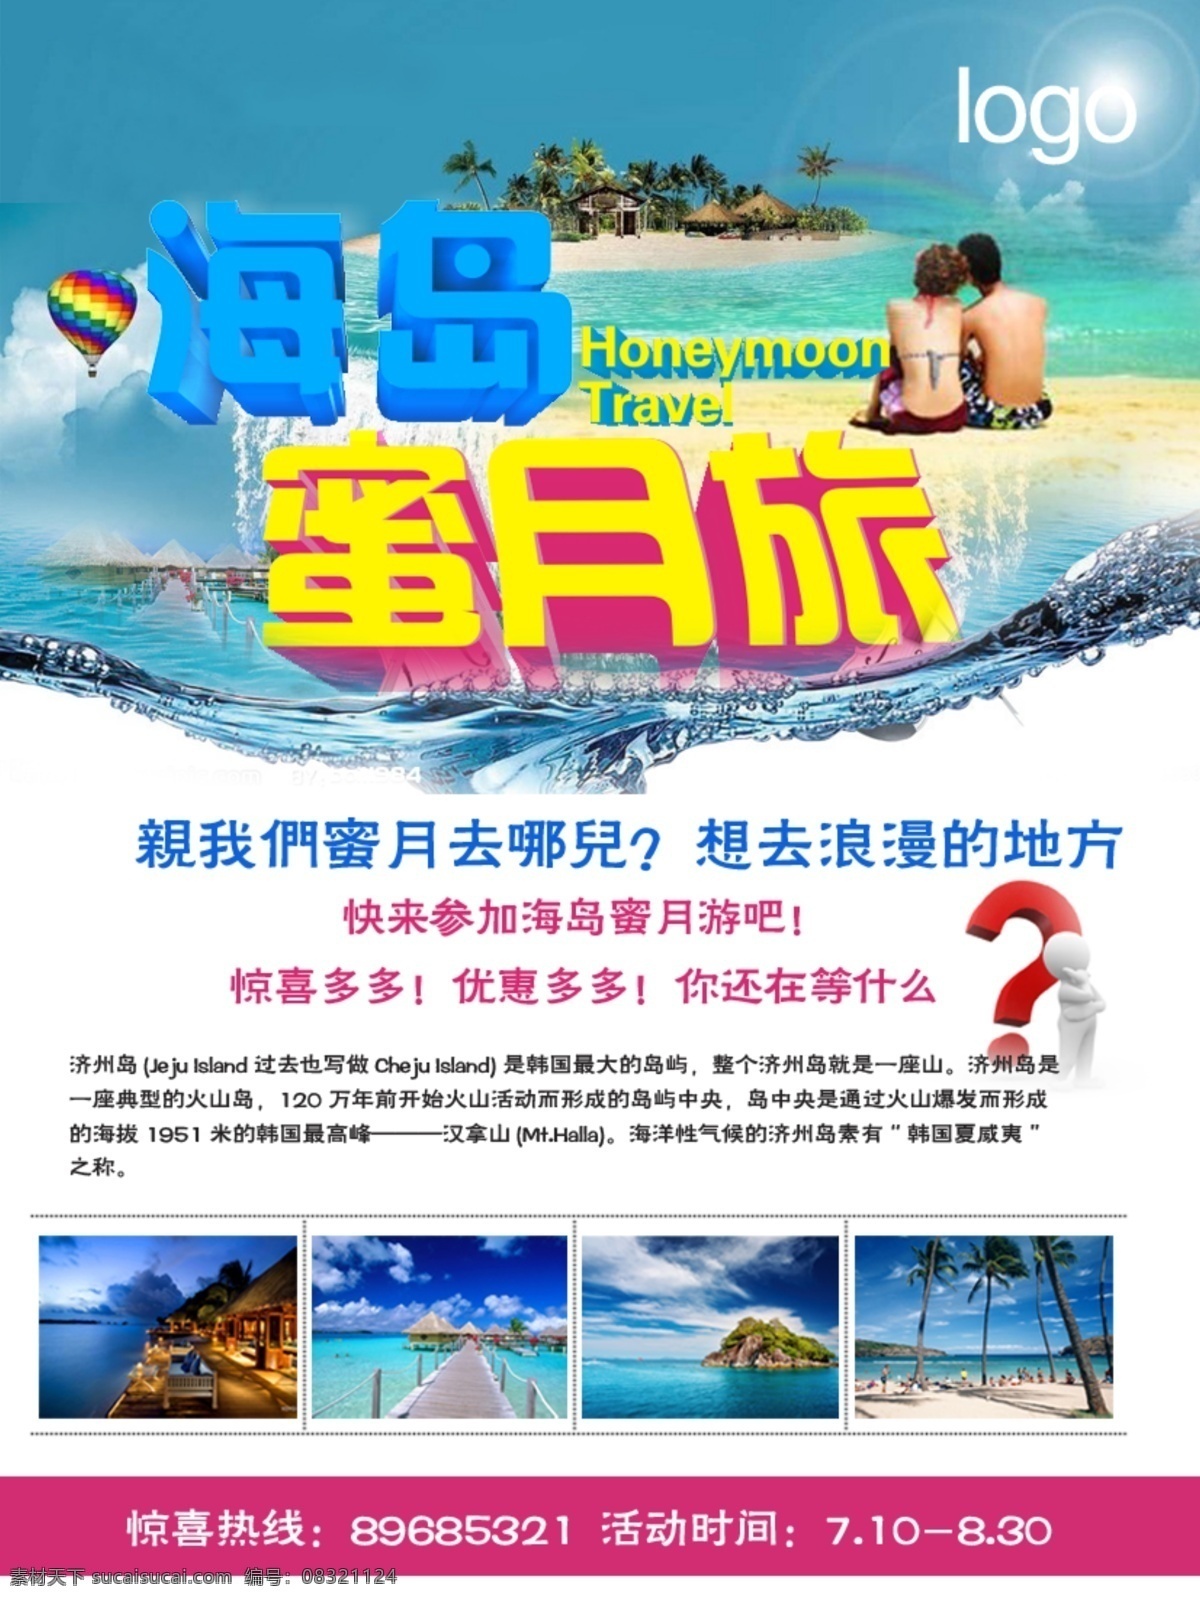 海岛蜜月旅游 旅游 彩页 宣传 网站 制作 印刷 旅游专题 广告设计模板 源文件